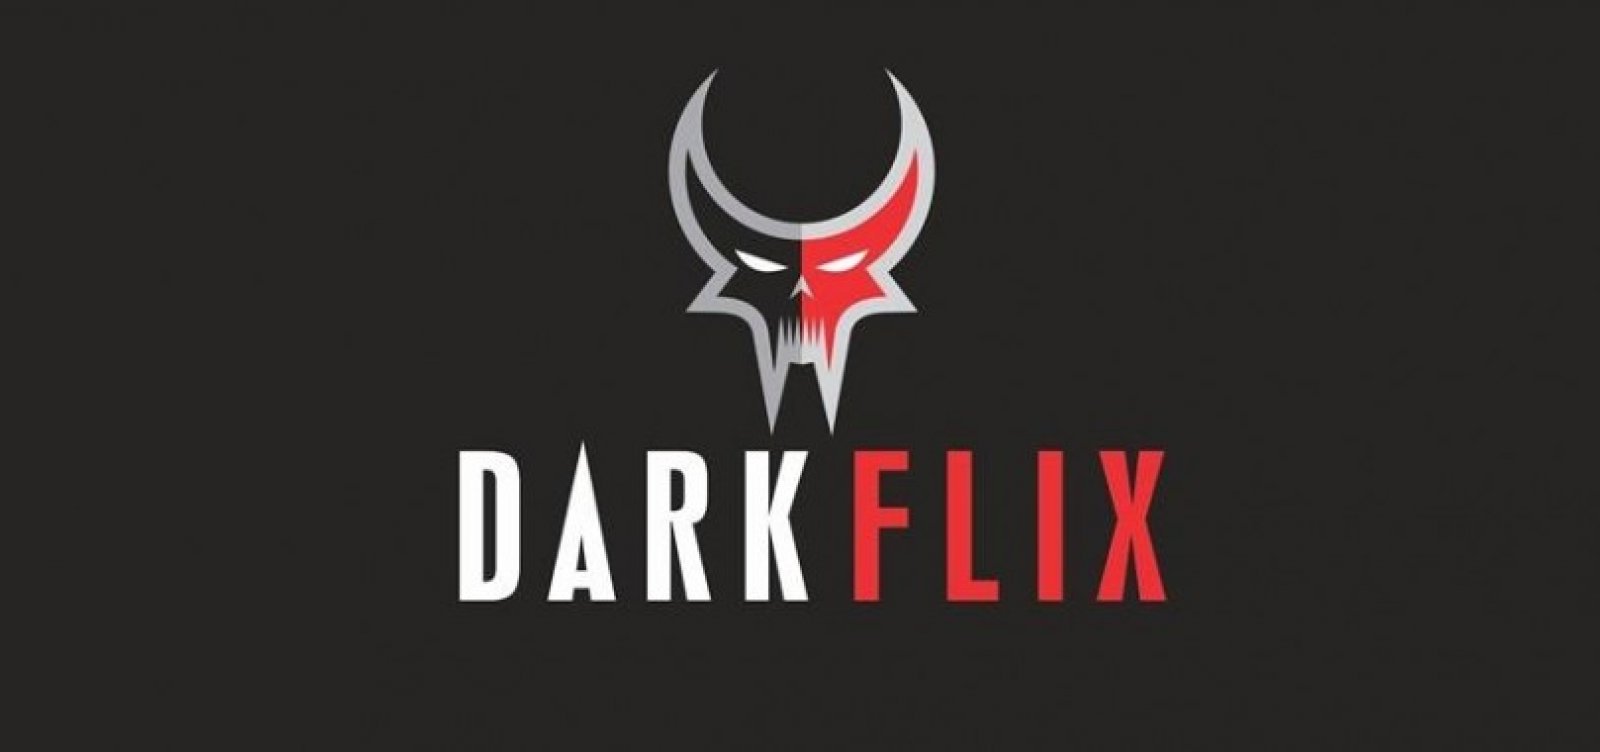 DarkFlix já está disponível com 666 filmes de terror